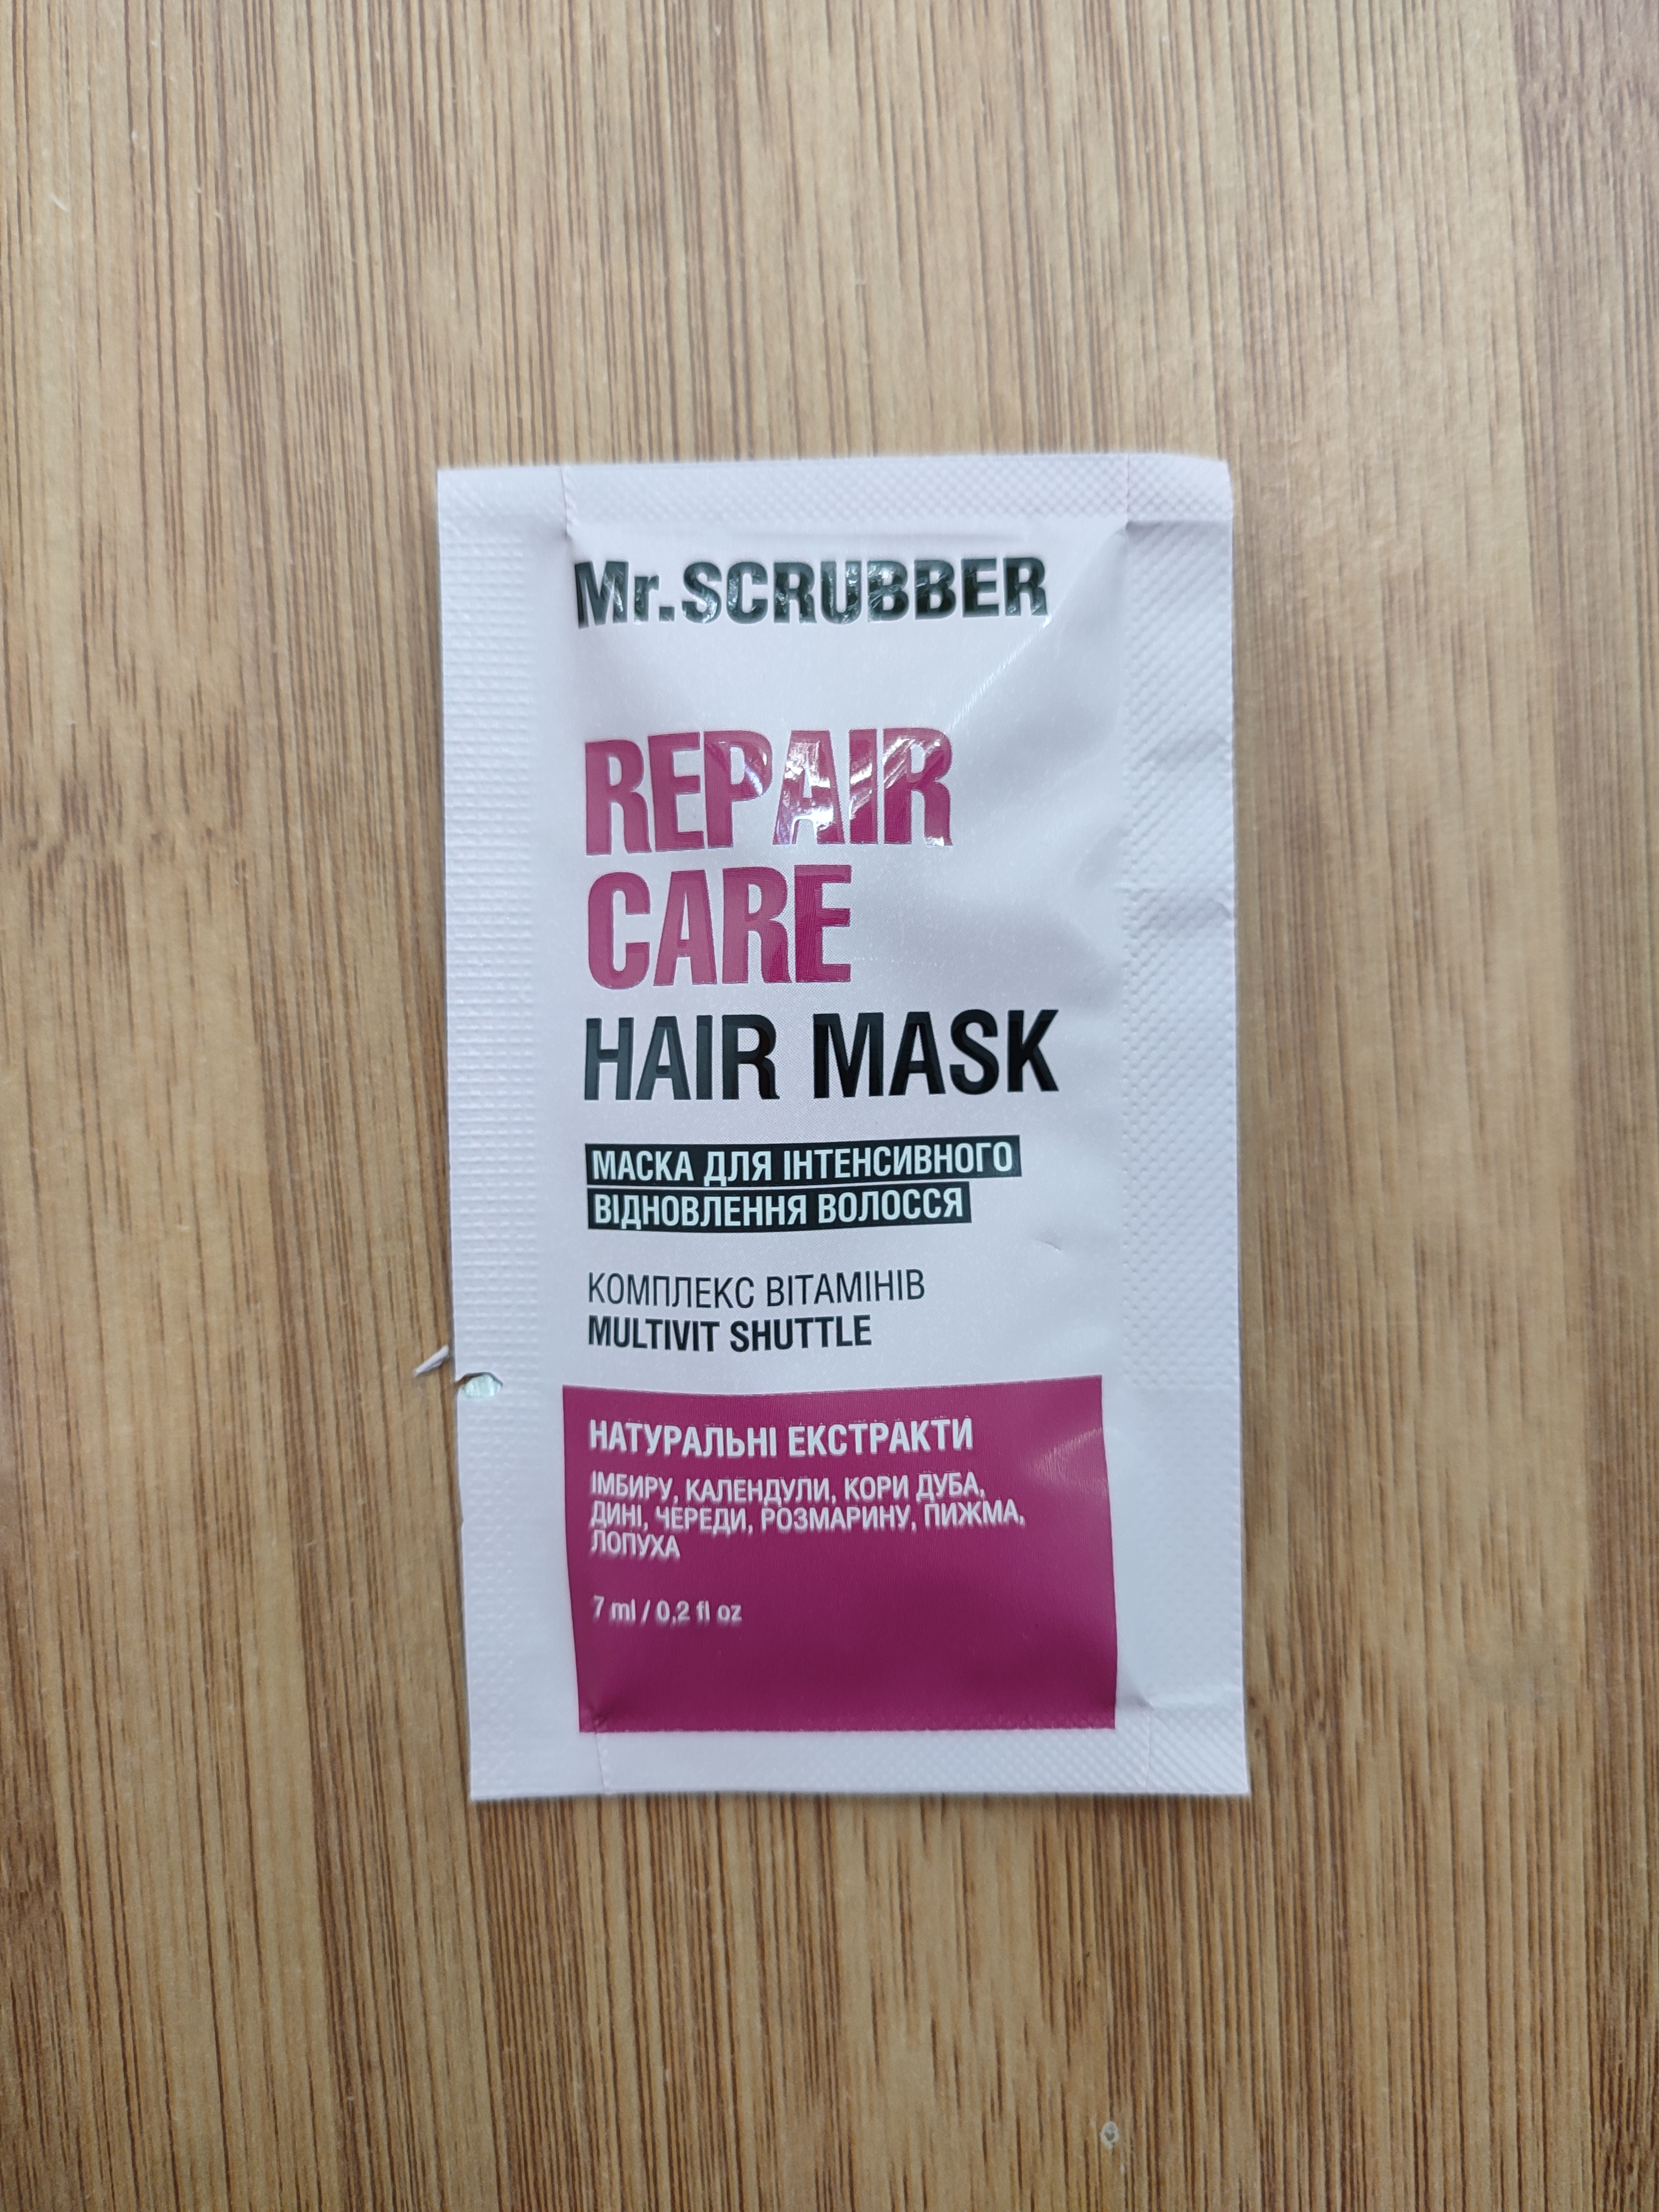 Маска для интенсивного восстановления волос | Mr.Scrubber